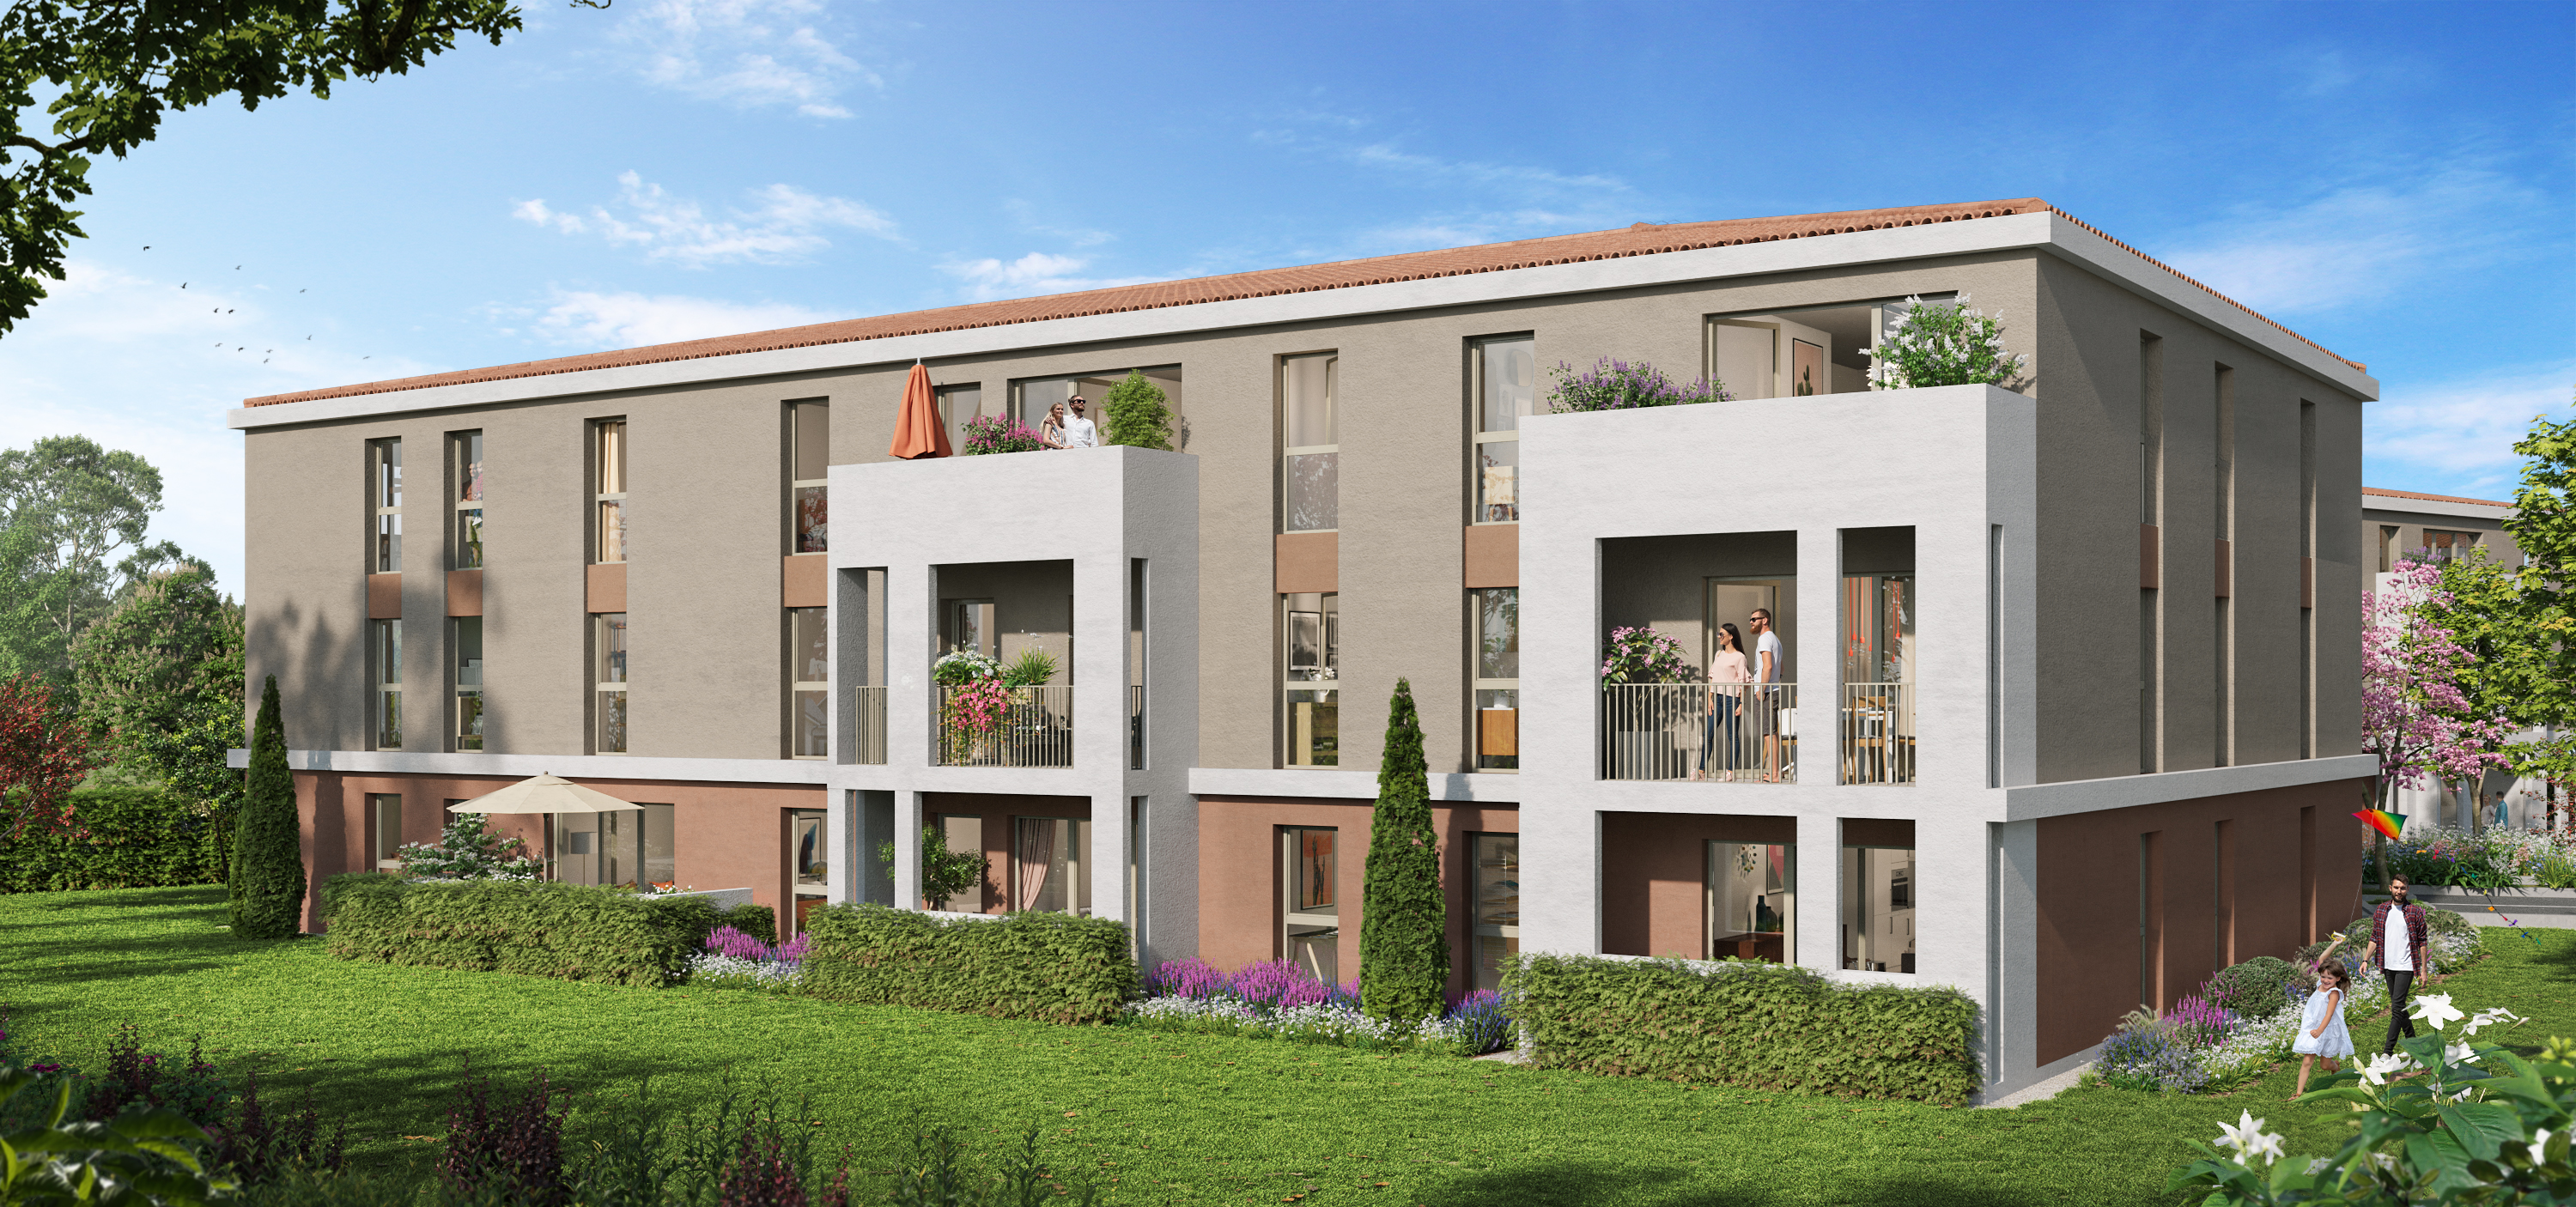 Programme immobilier KAB41 appartement à Lambesc (13410) 30 km de l’aéroport de Marseille